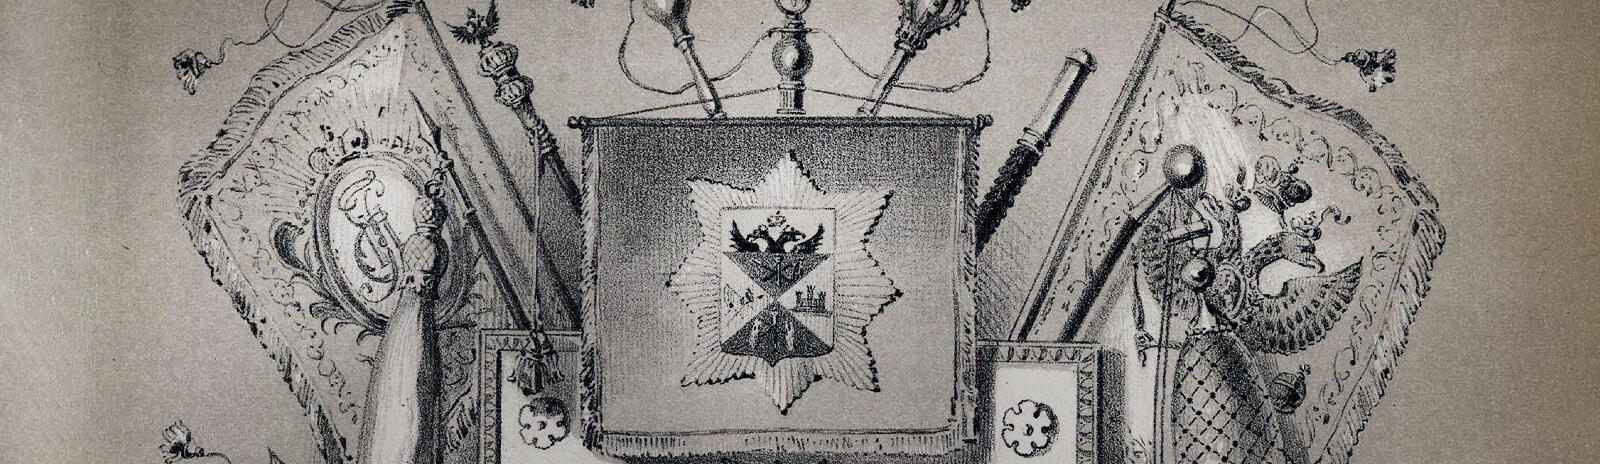 Изображение Трехсотлетие Войска Донского 1570-1870 г.